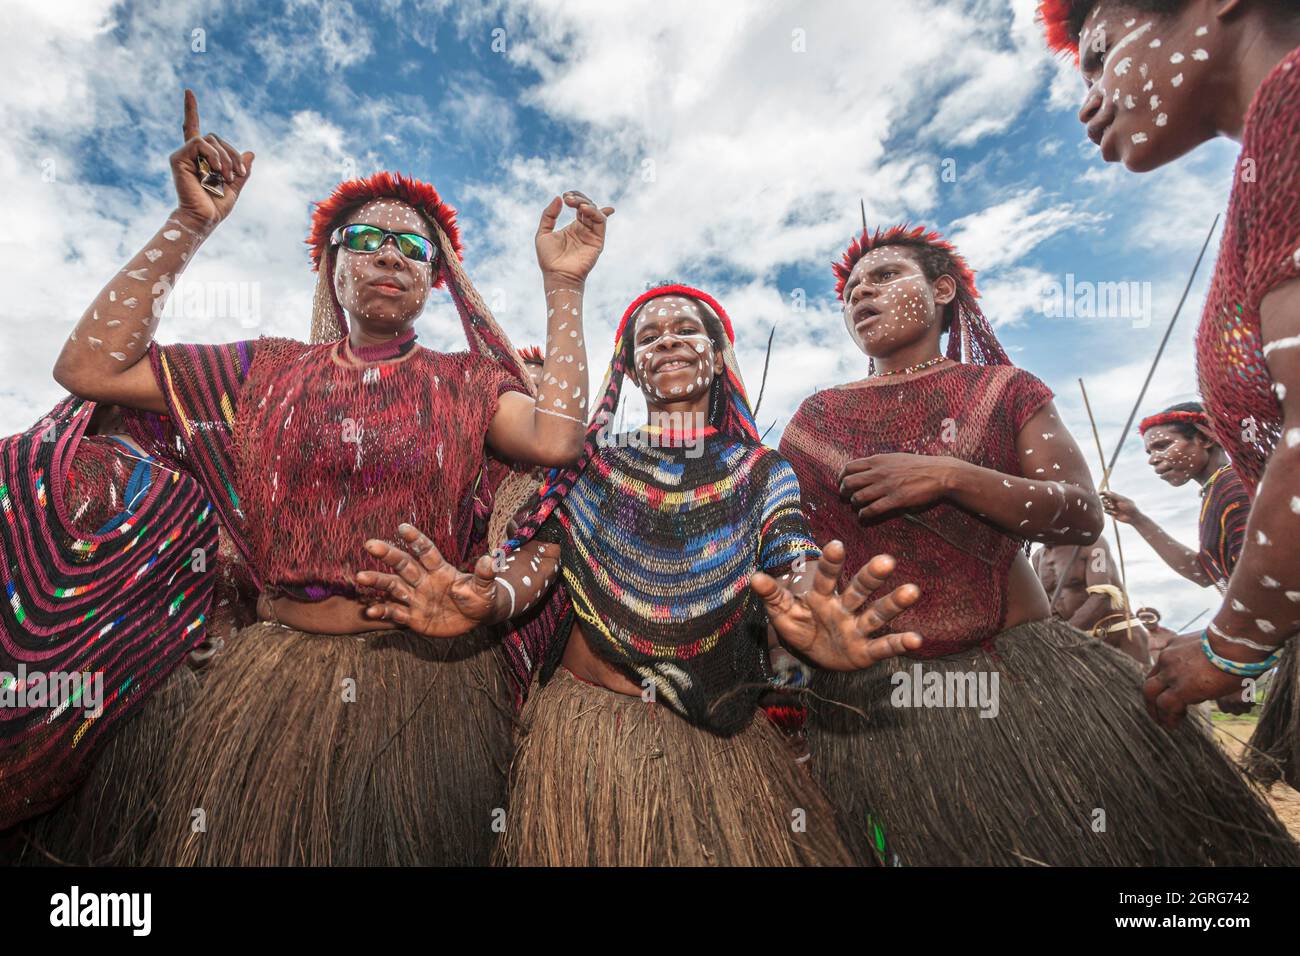 Indonesien, Papua, Stadt Wamena, eine Gruppe junger Mädchen aus dem Dani-Stamm, die tanzen und singen, um Männer zu ermutigen, die in den Krieg gezogen sind. Baliem Valley Cultural Festival, jedes Jahr im August kommen Stämme zusammen, um uralte Kriegsszenen aufzuführen, Parade und Tanz in traditioneller Kleidung Stockfoto